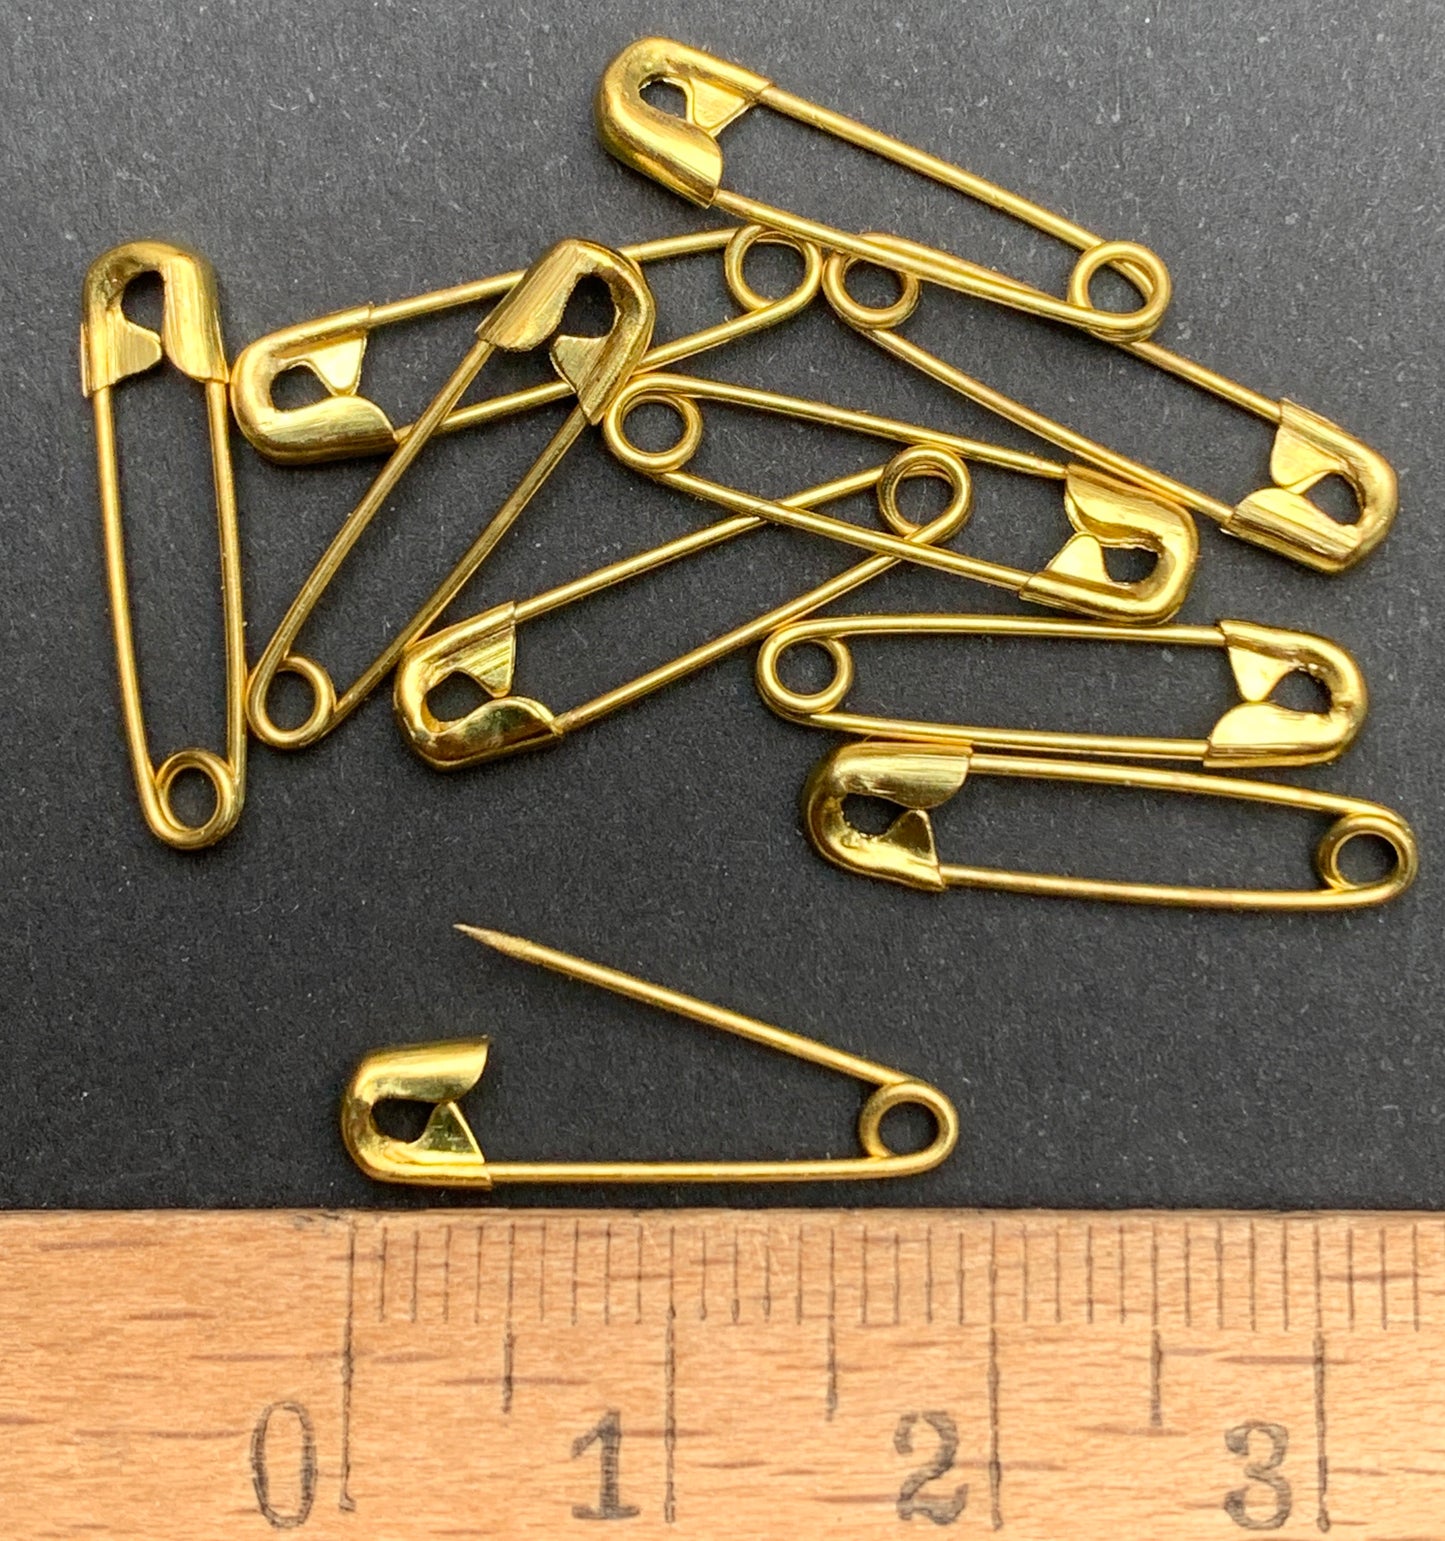 10 Tiny 2cm Vintage Brass Safety Pins